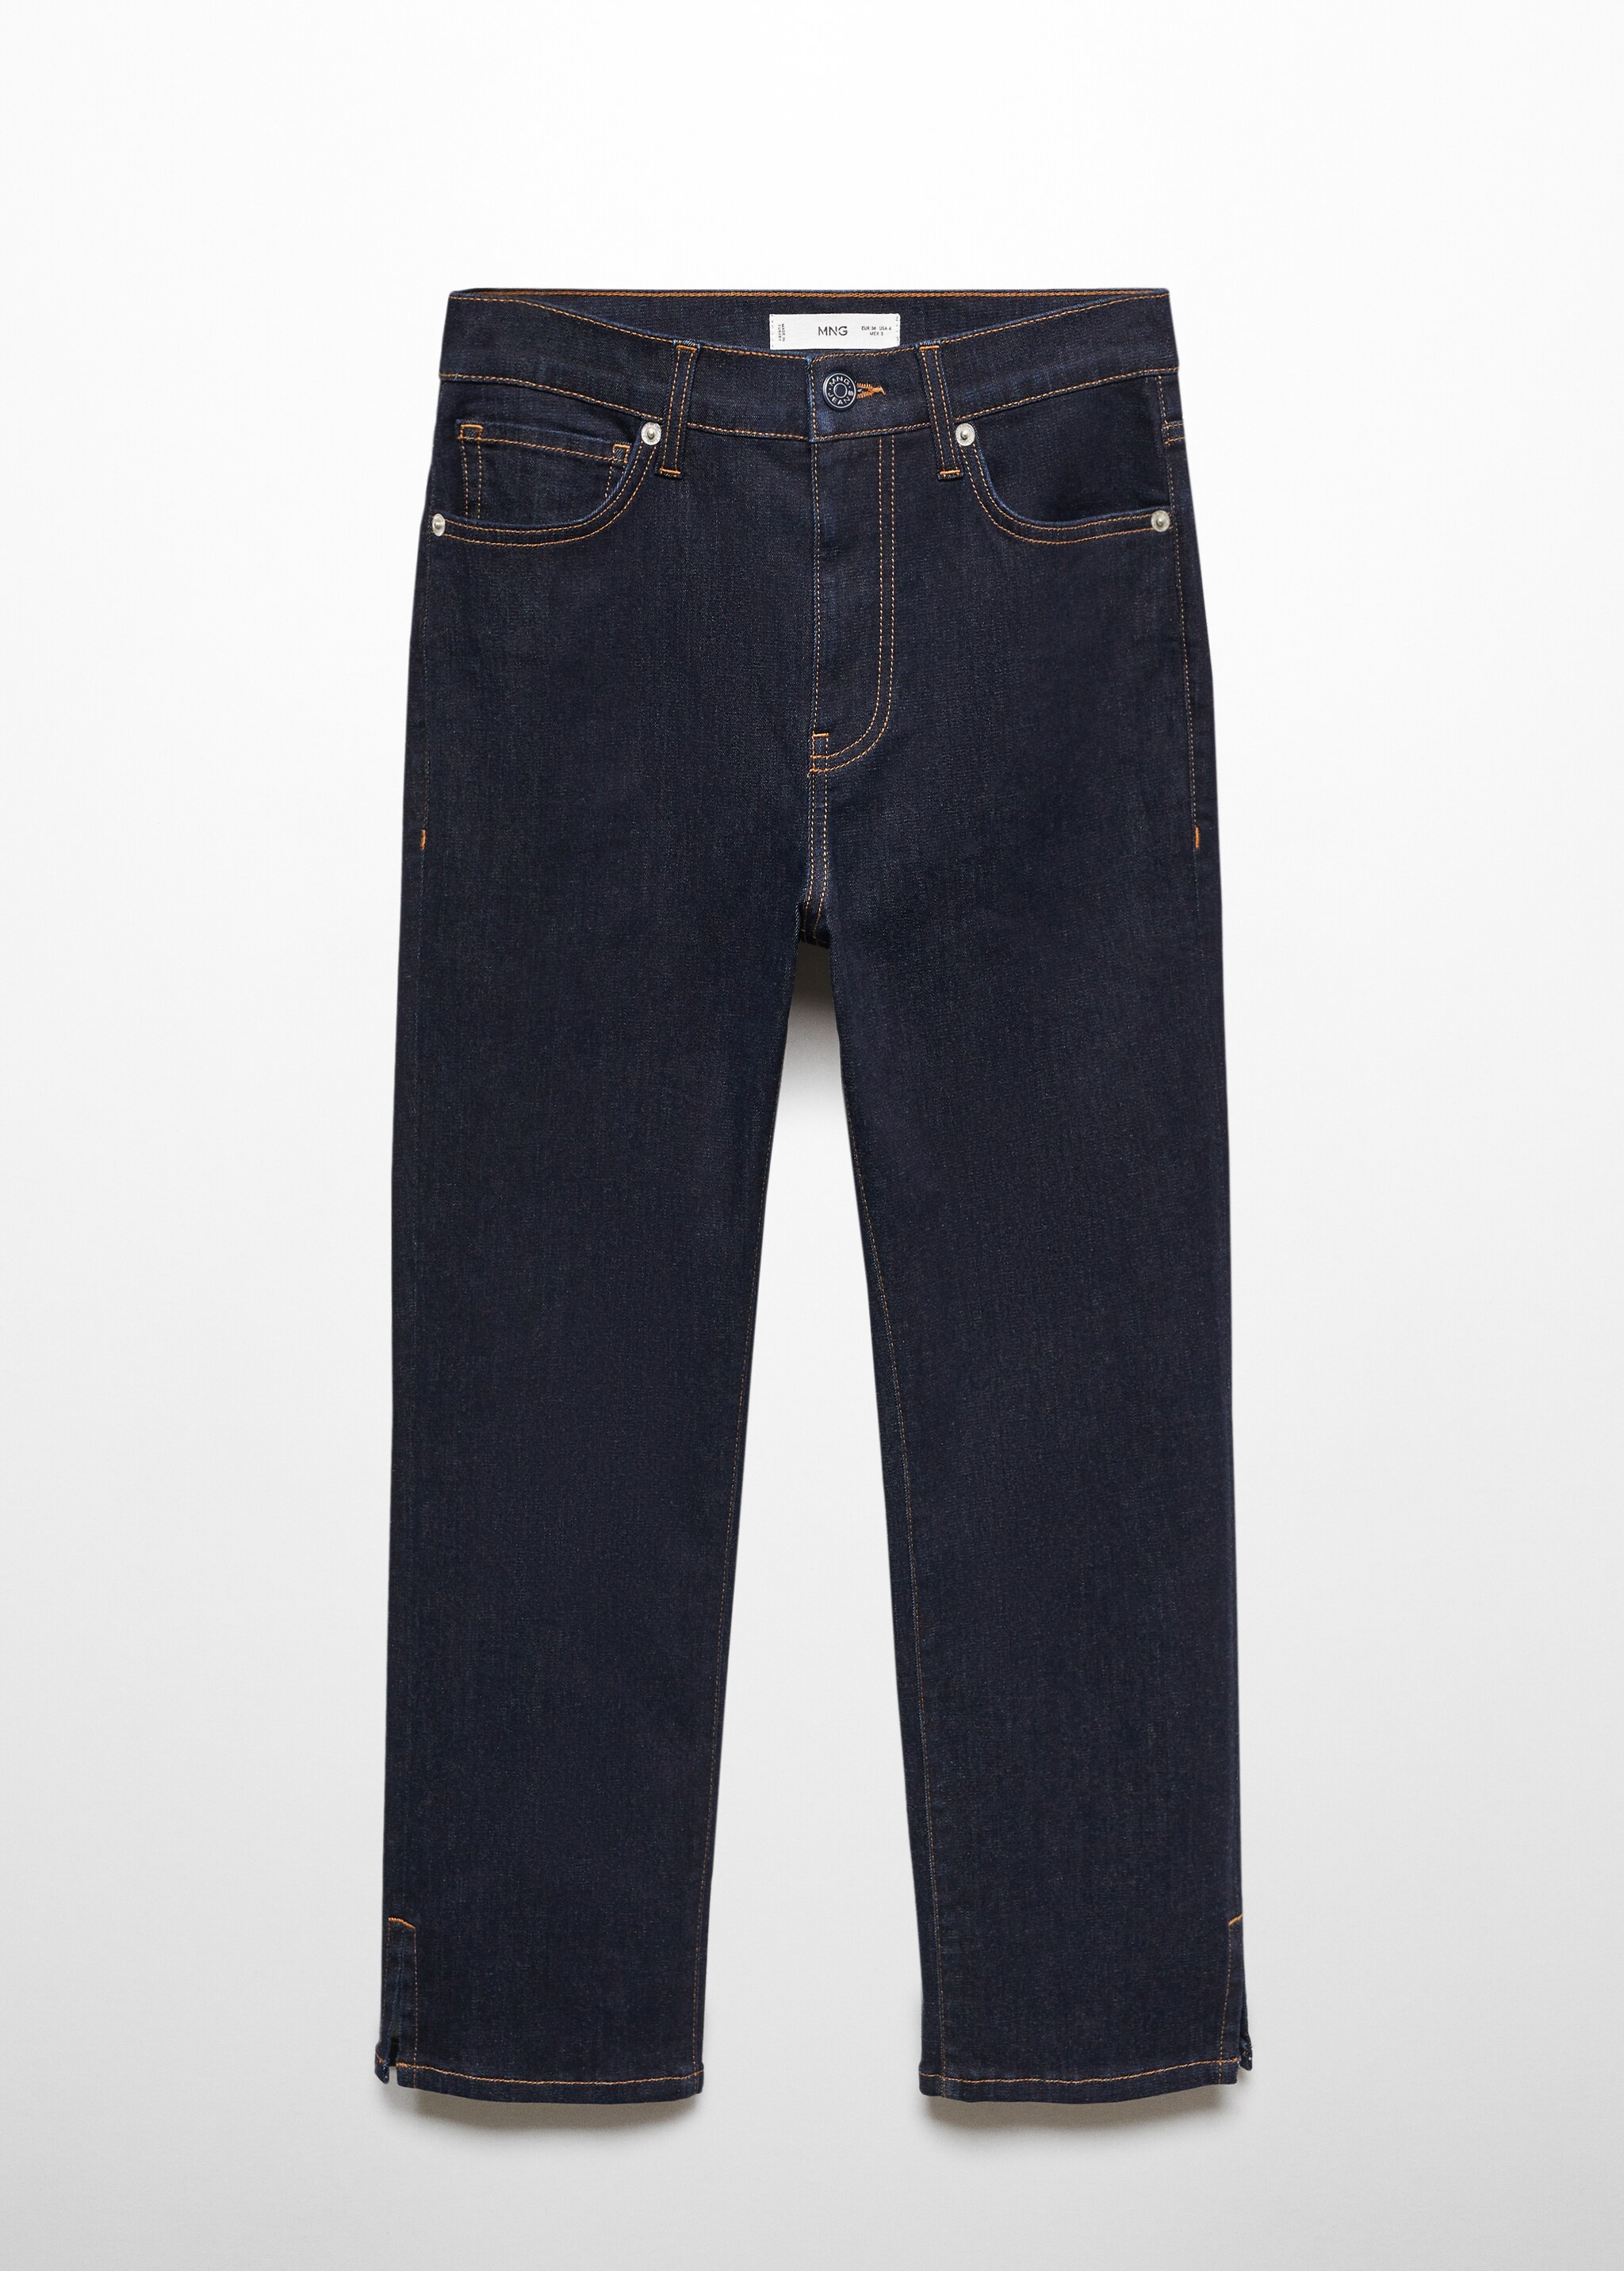 Yandan yırtmaçlı capri jean pantolon - Modelsiz ürün